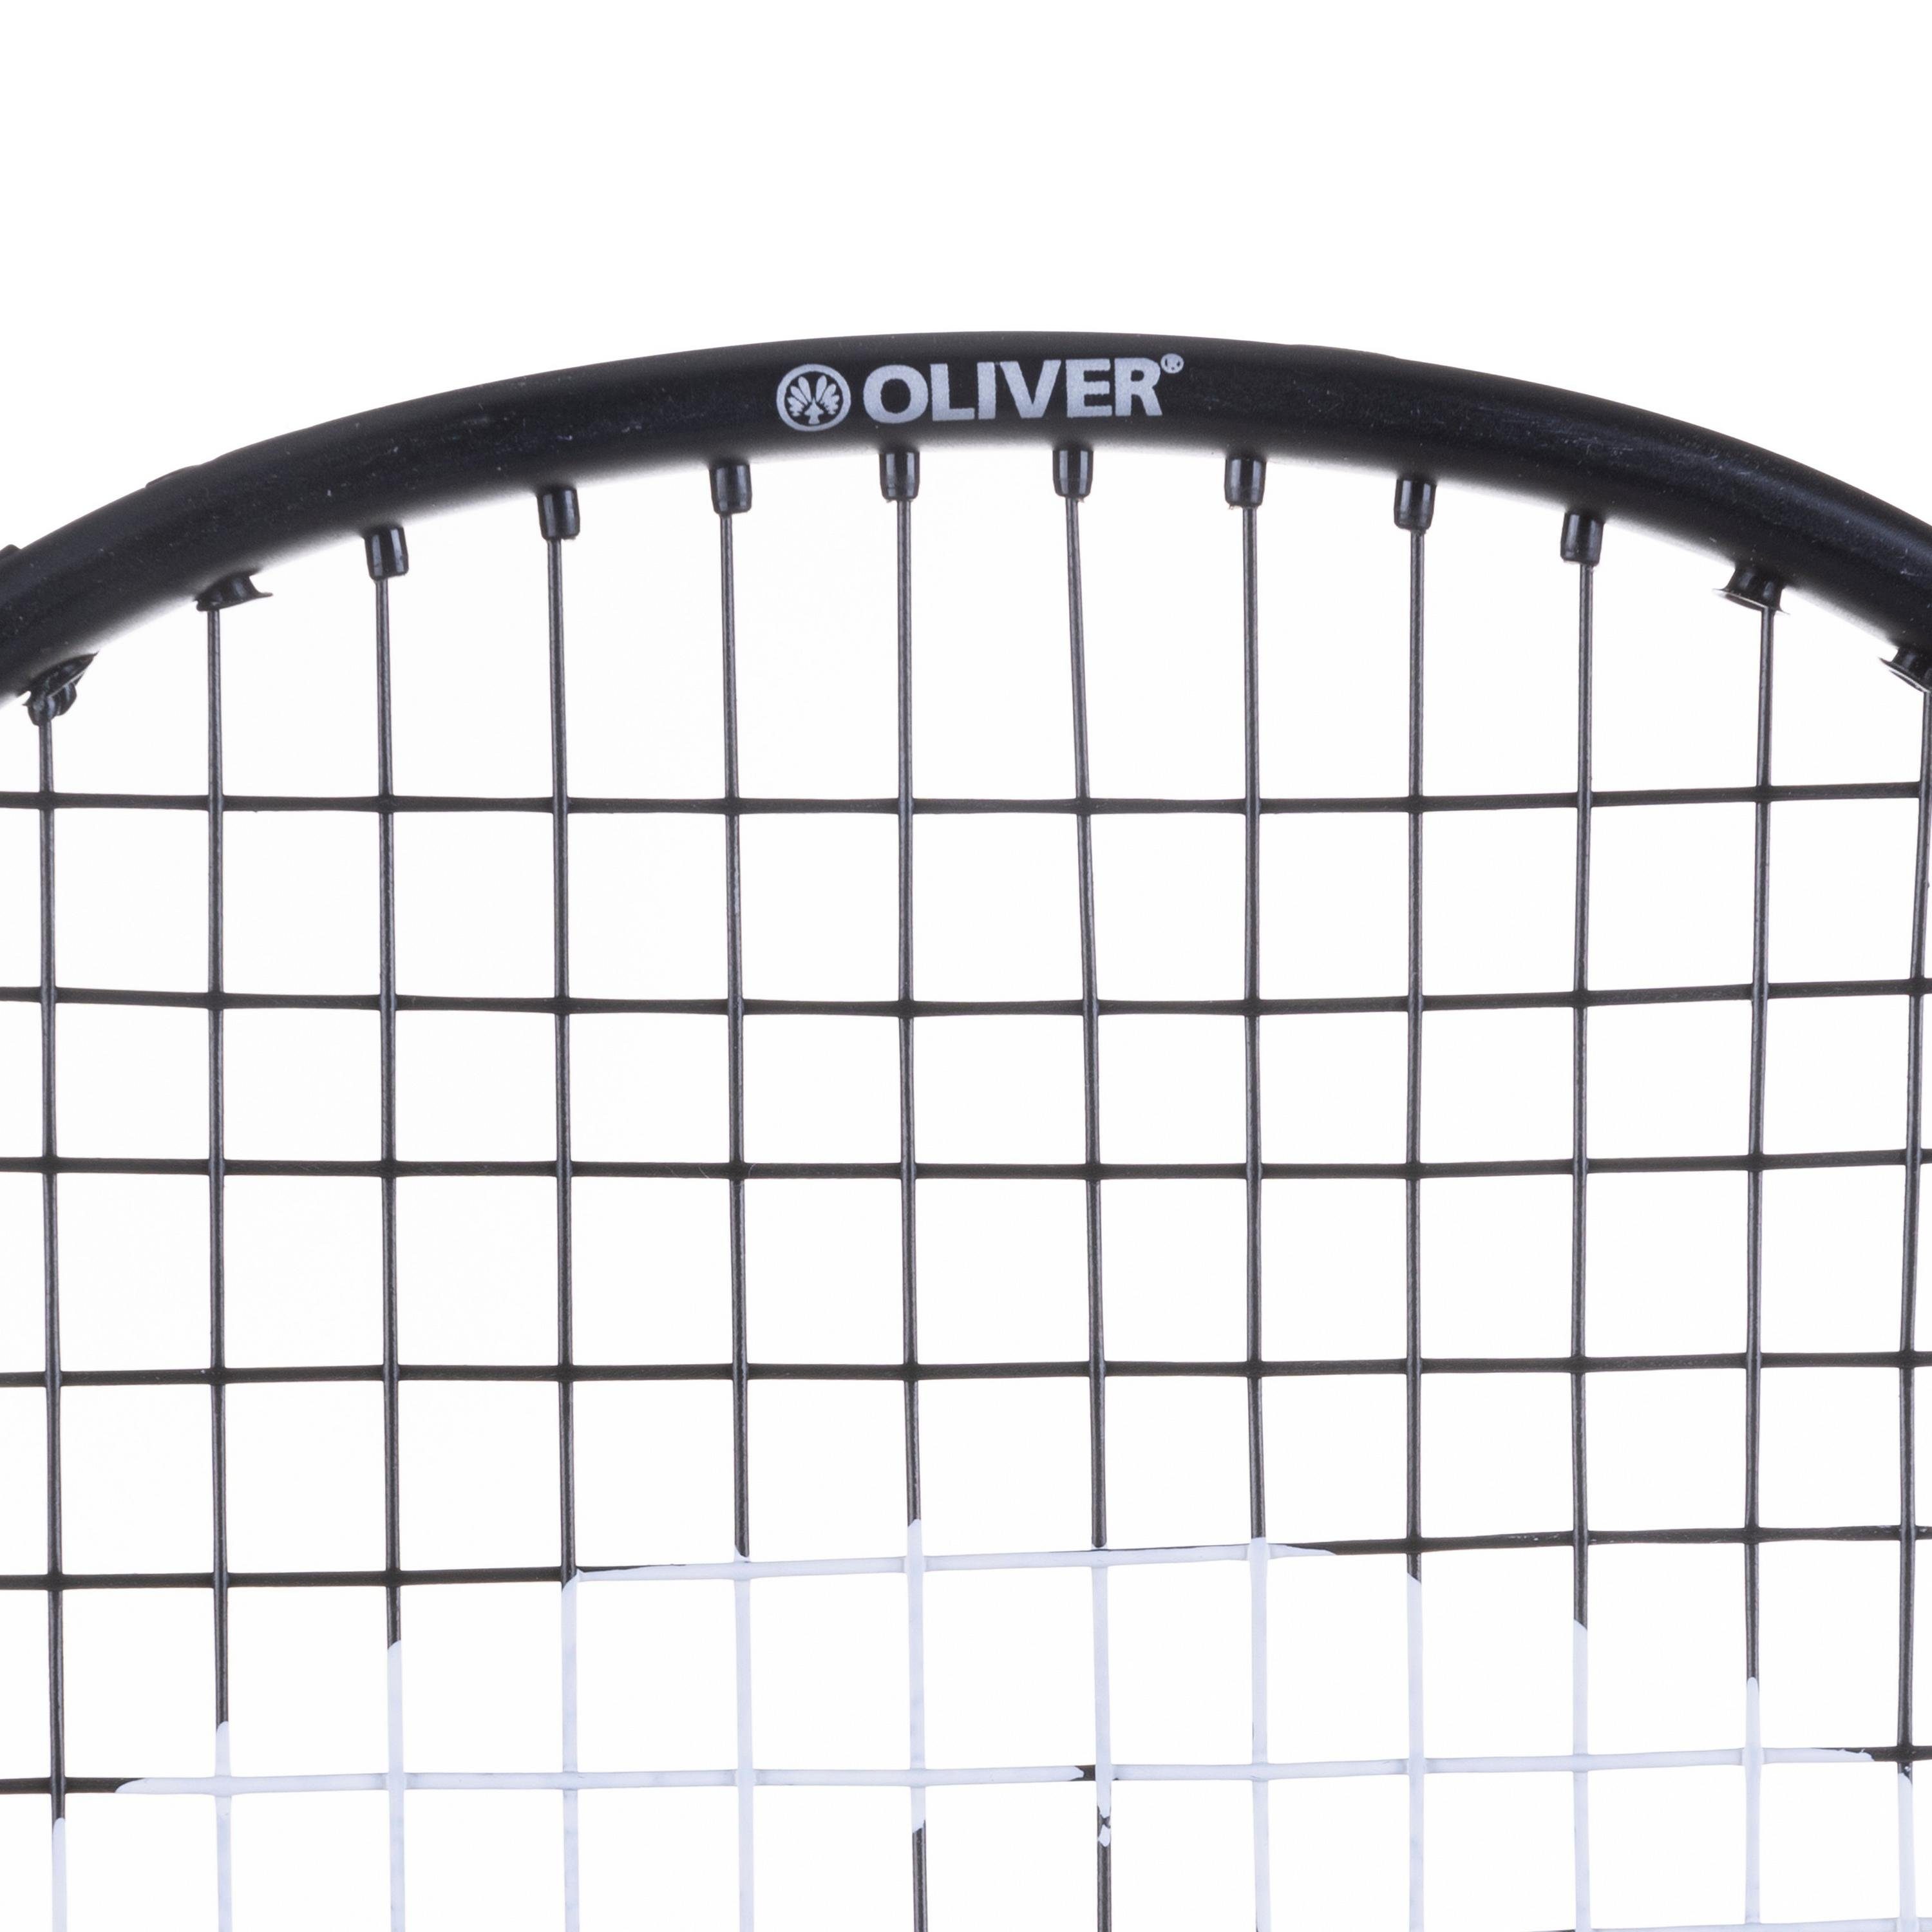 Oliver 6 SMASH FETTER Badmintonschläger